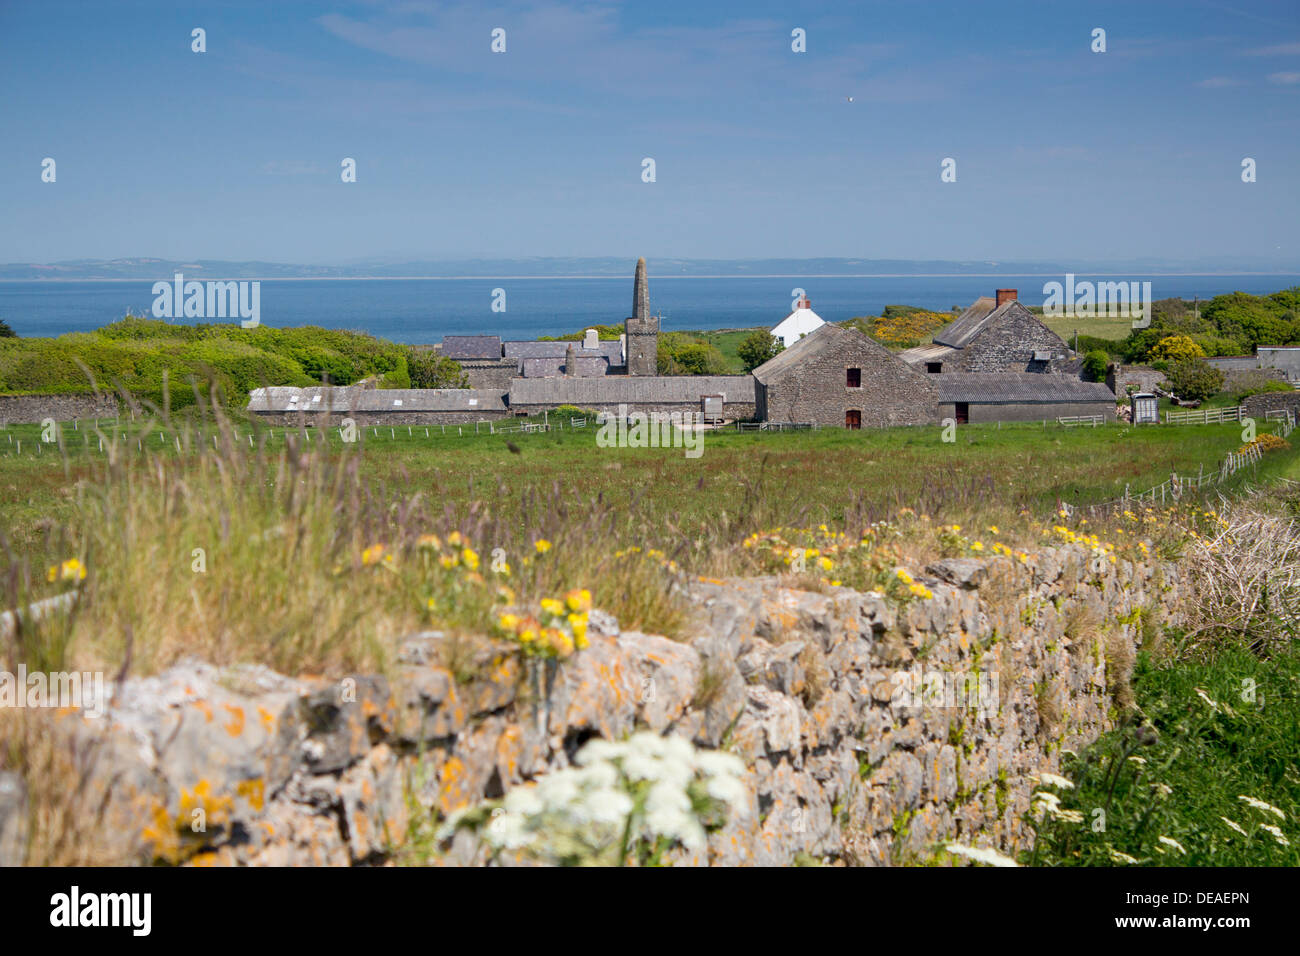 Caldey Island St. Illtyd-Priorat Kirche und Hof Altbauten Küste Küste Meer Ozean hinter Pembrokeshire West Wales UK Stockfoto